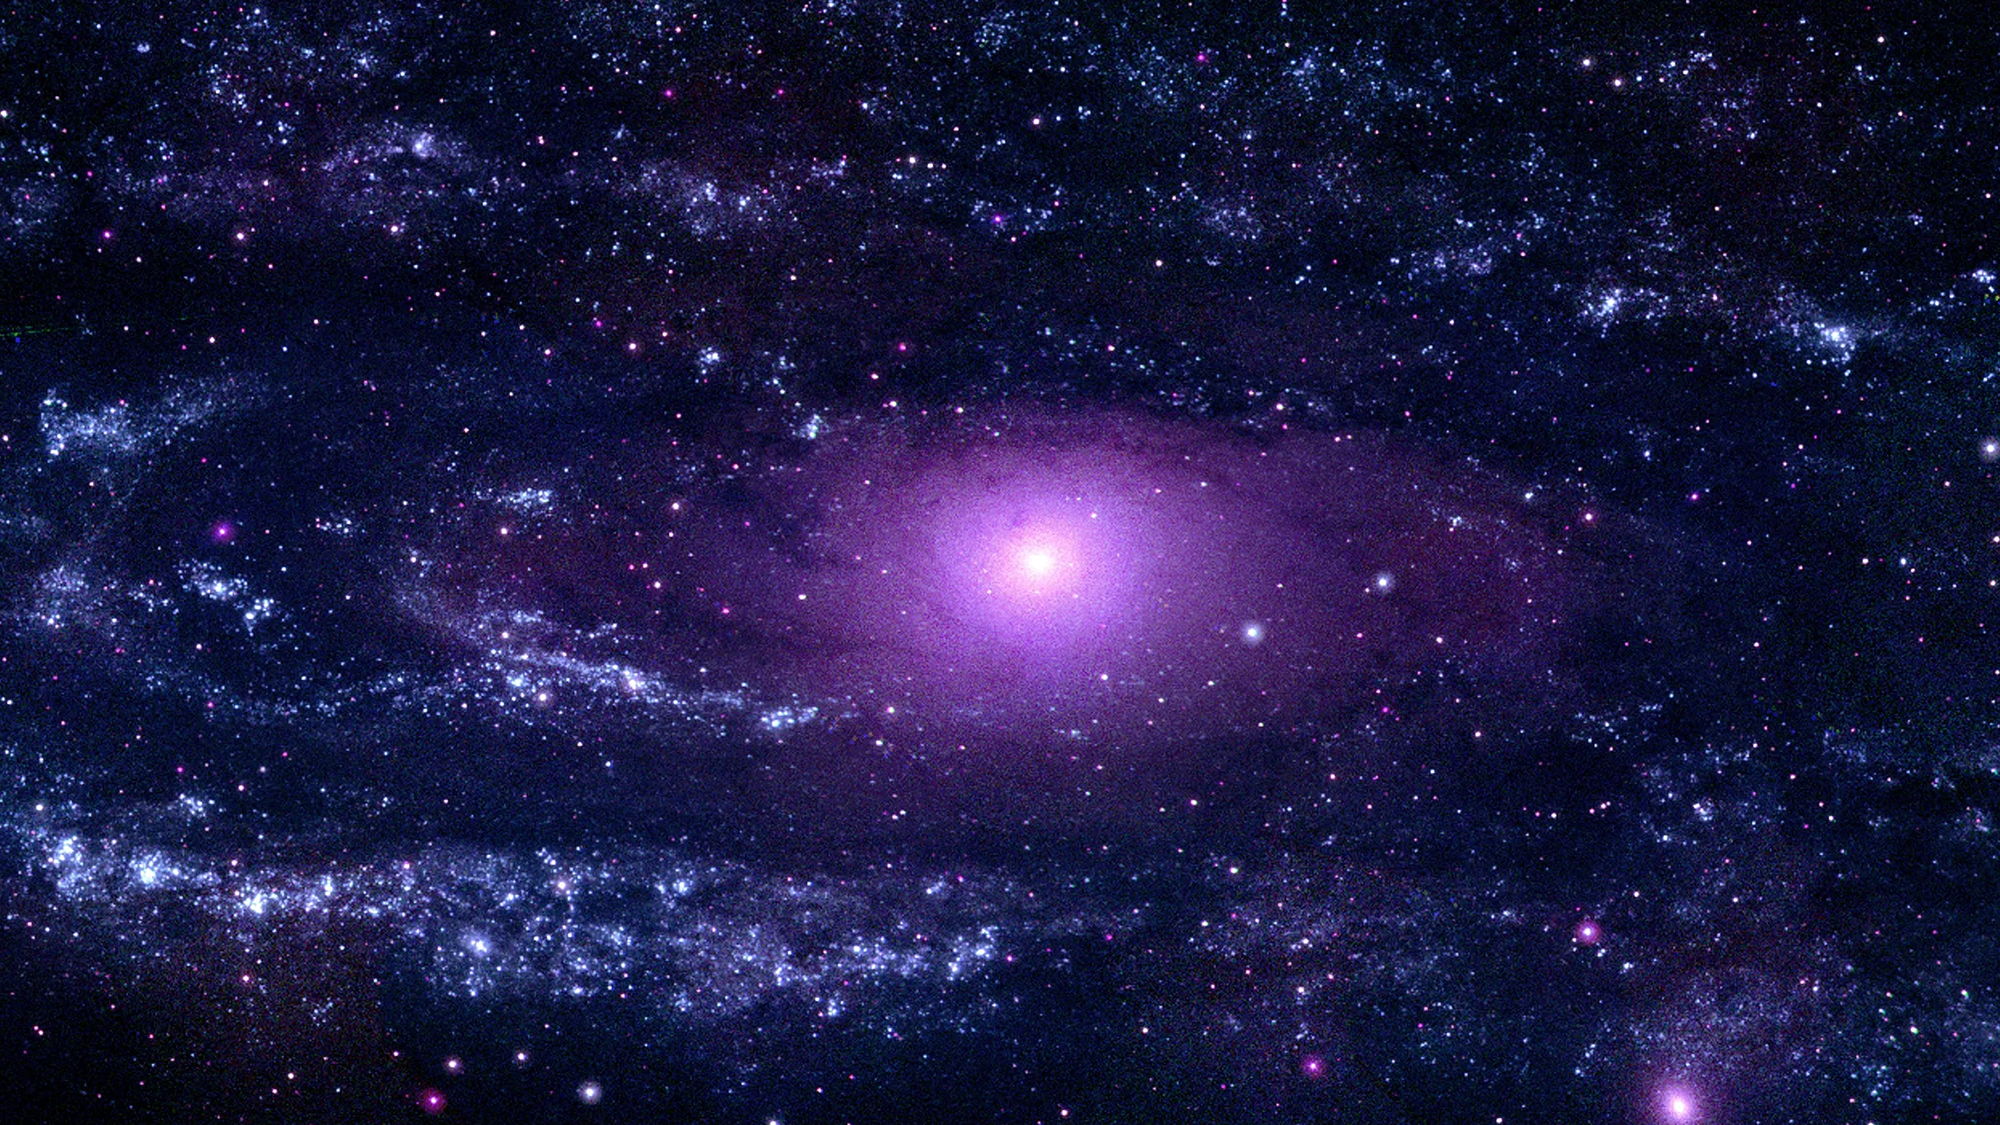 a swirling, purple galaxy in space